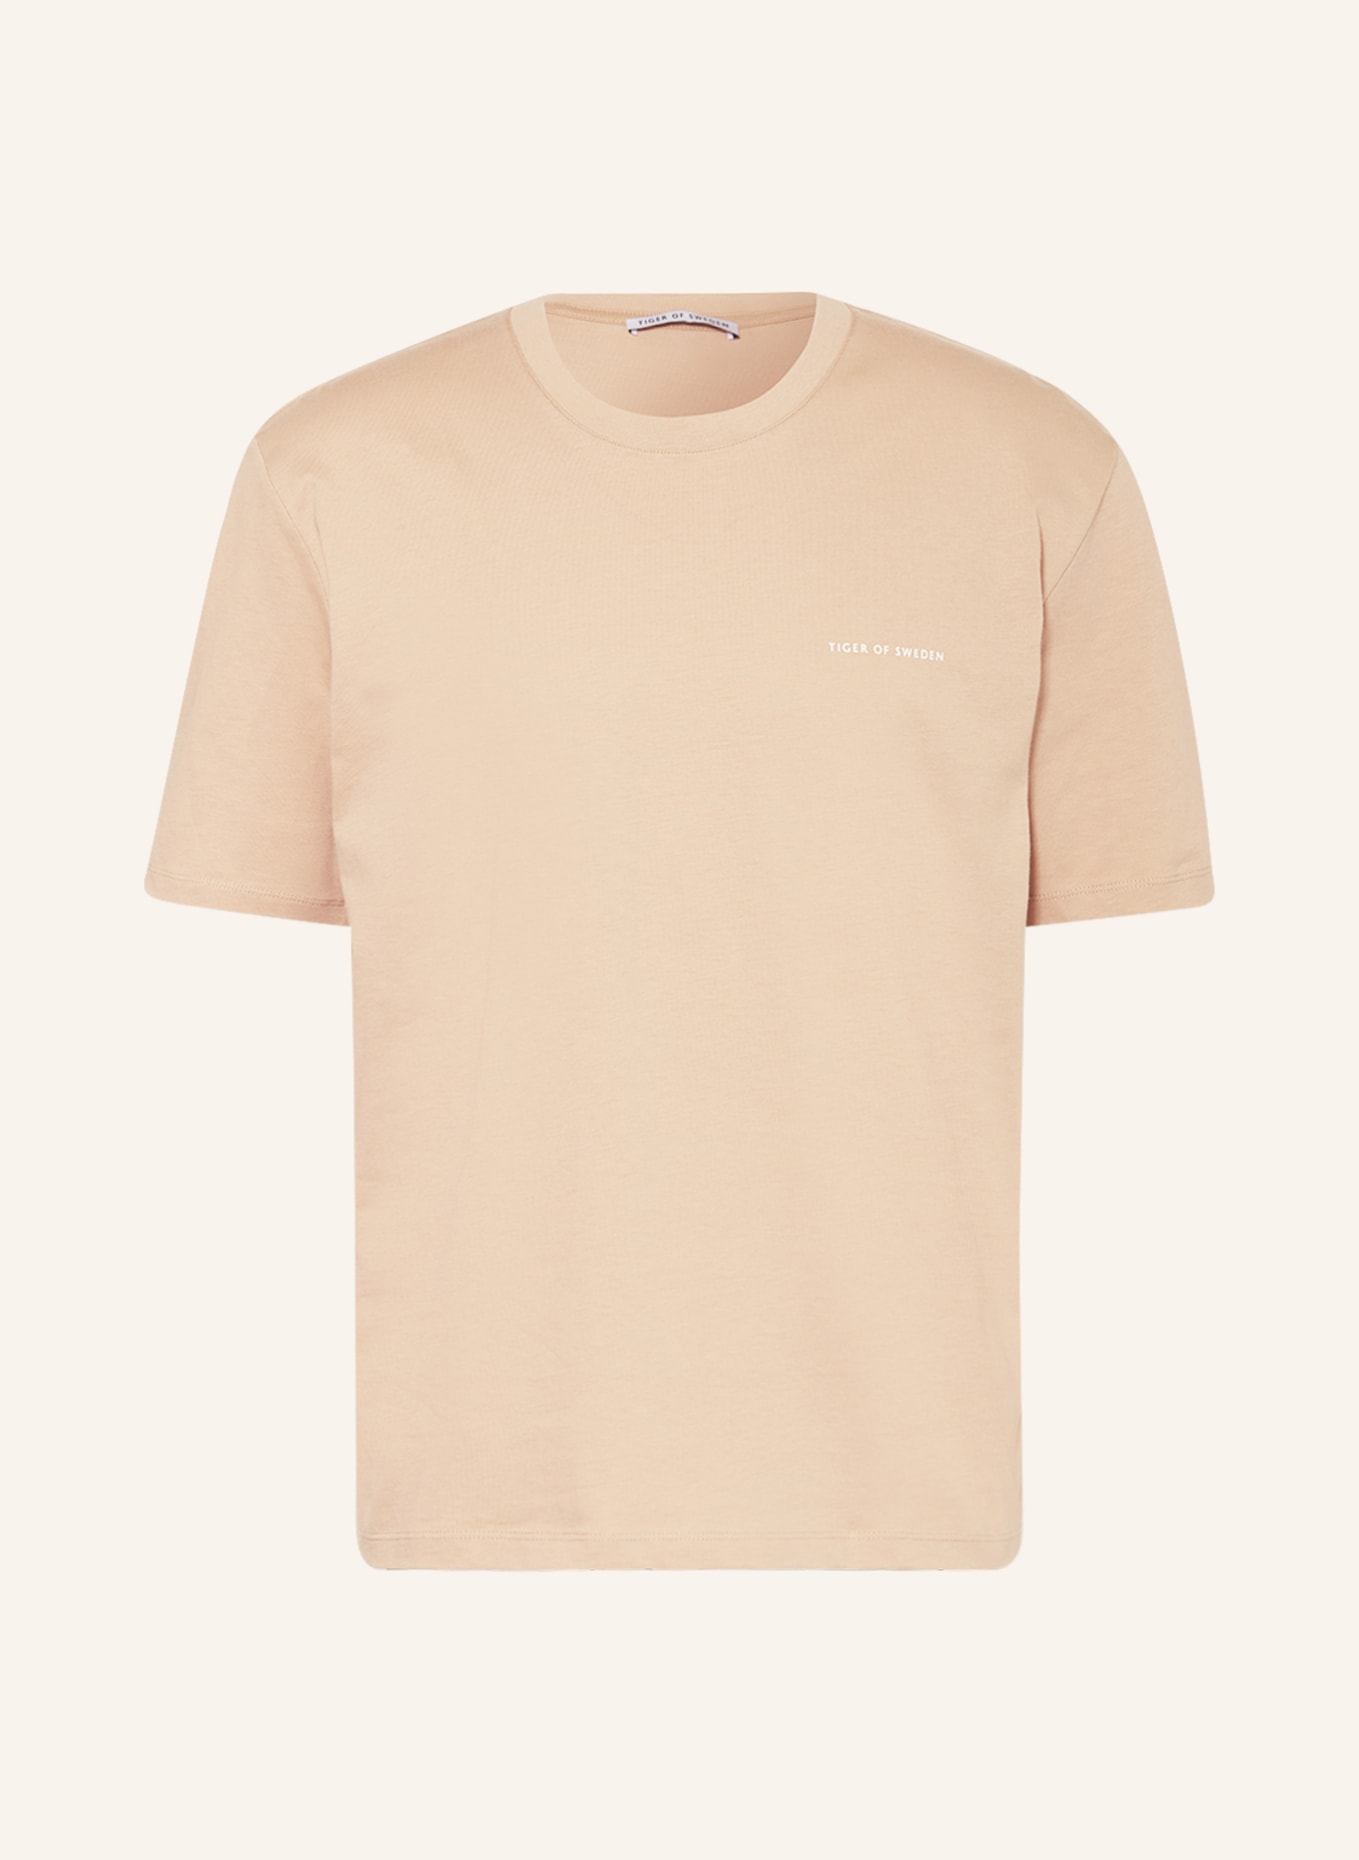 TIGER OF SWEDEN T-shirt PRO., Color: BEIGE/ WHITE (Image 1)